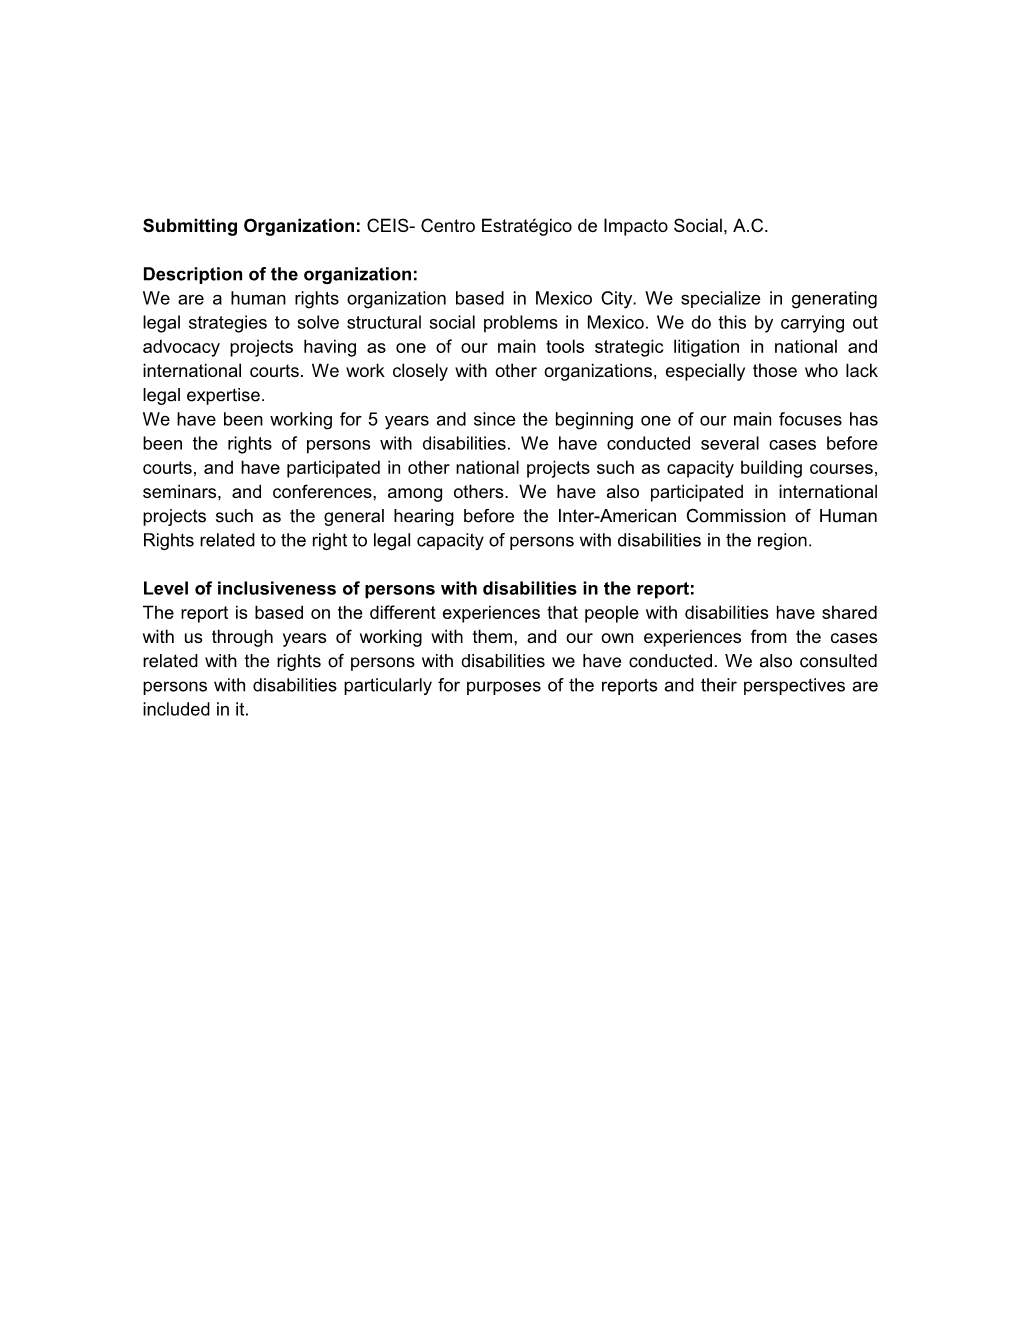 Submitting Organization: CEIS- Centro Estratégico De Impacto Social, A.C